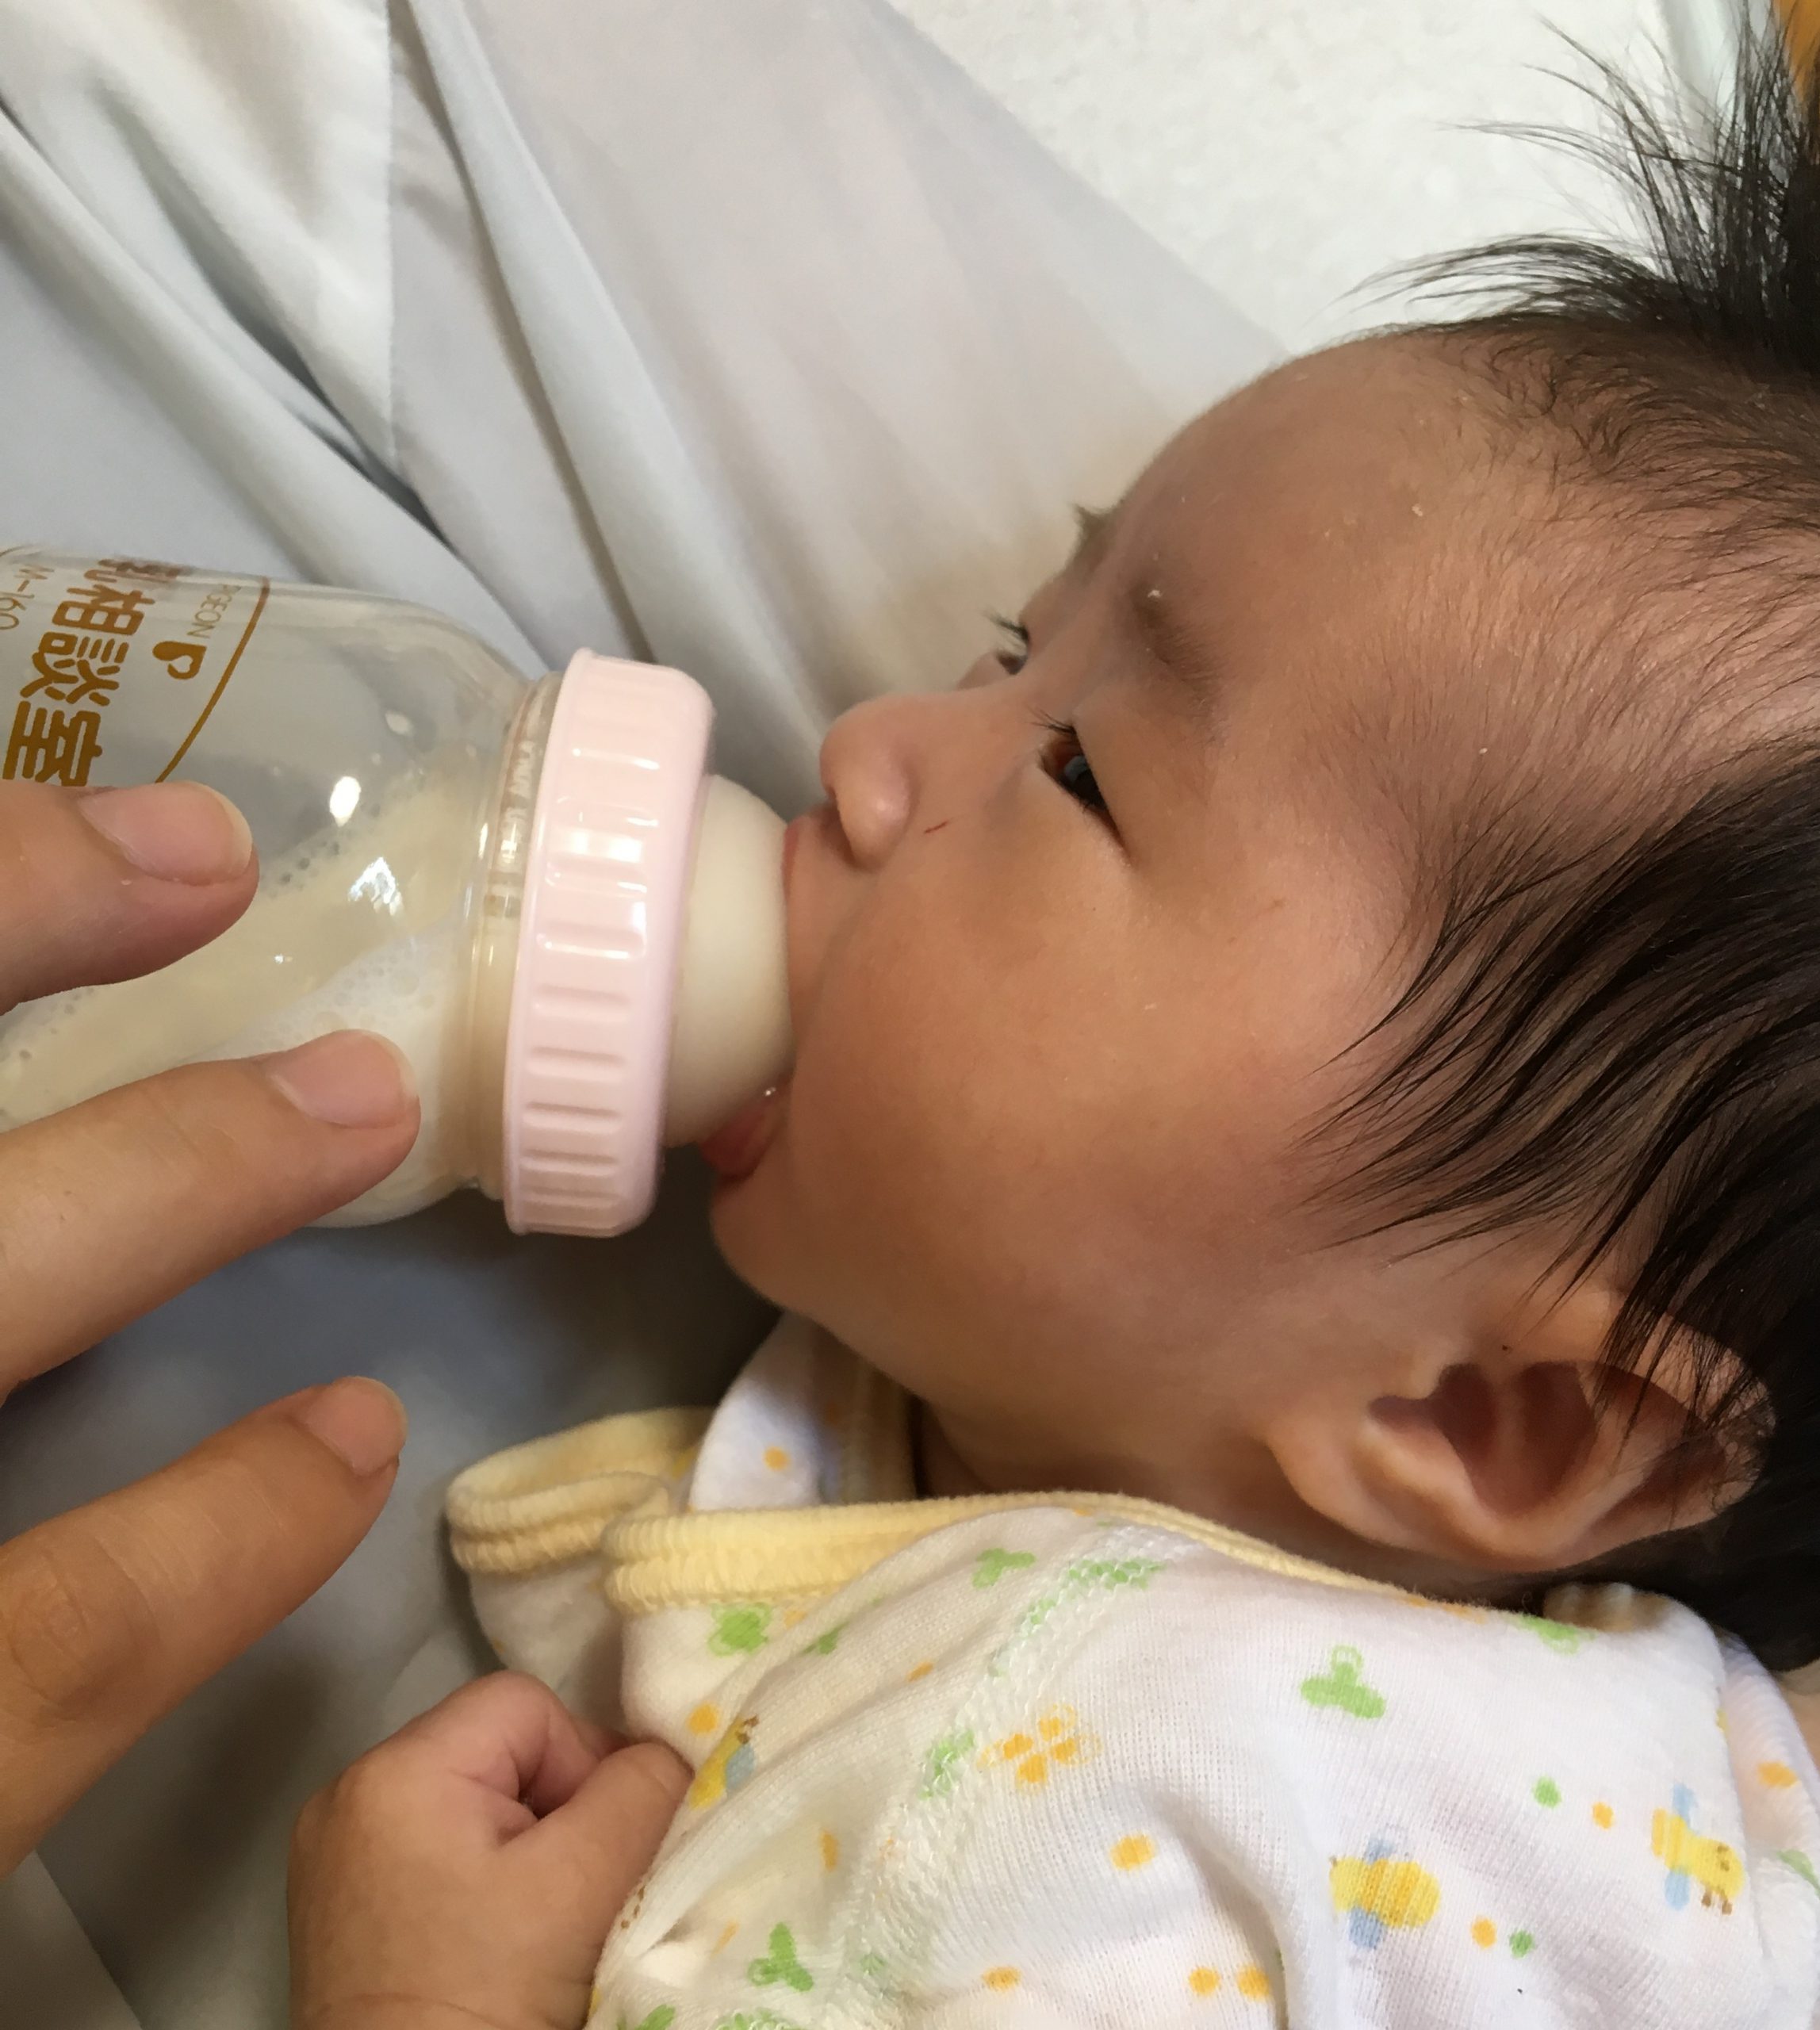  赤ちゃんが飲む粉ミルクをぬるま湯でつくると危険!!